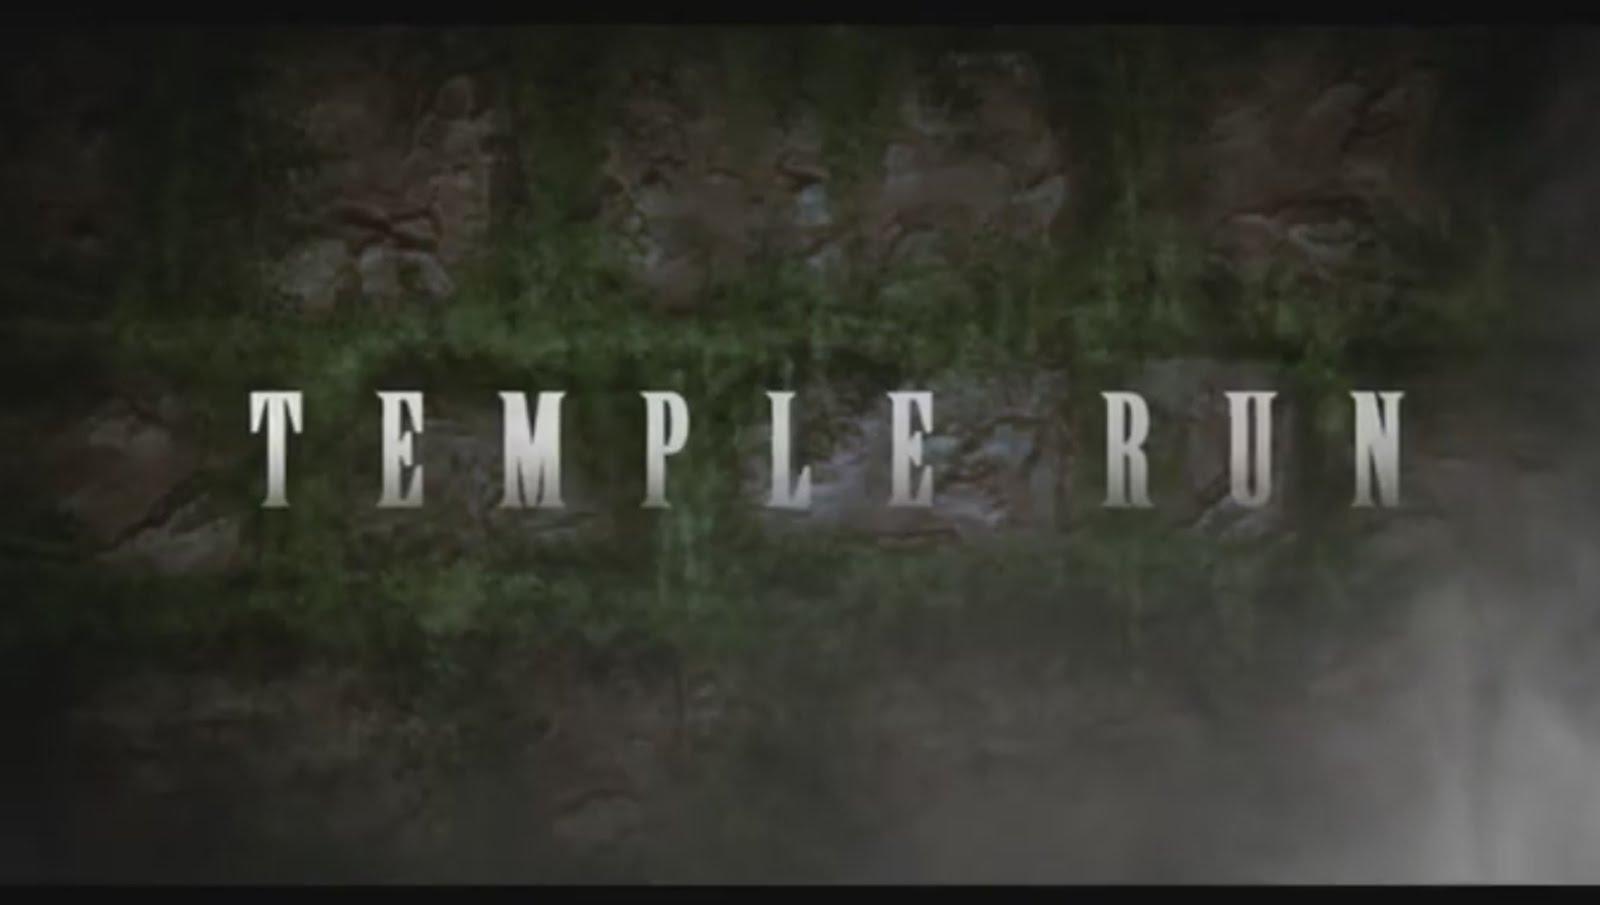 Game Temple Run Akan Diangkat Ke Film!